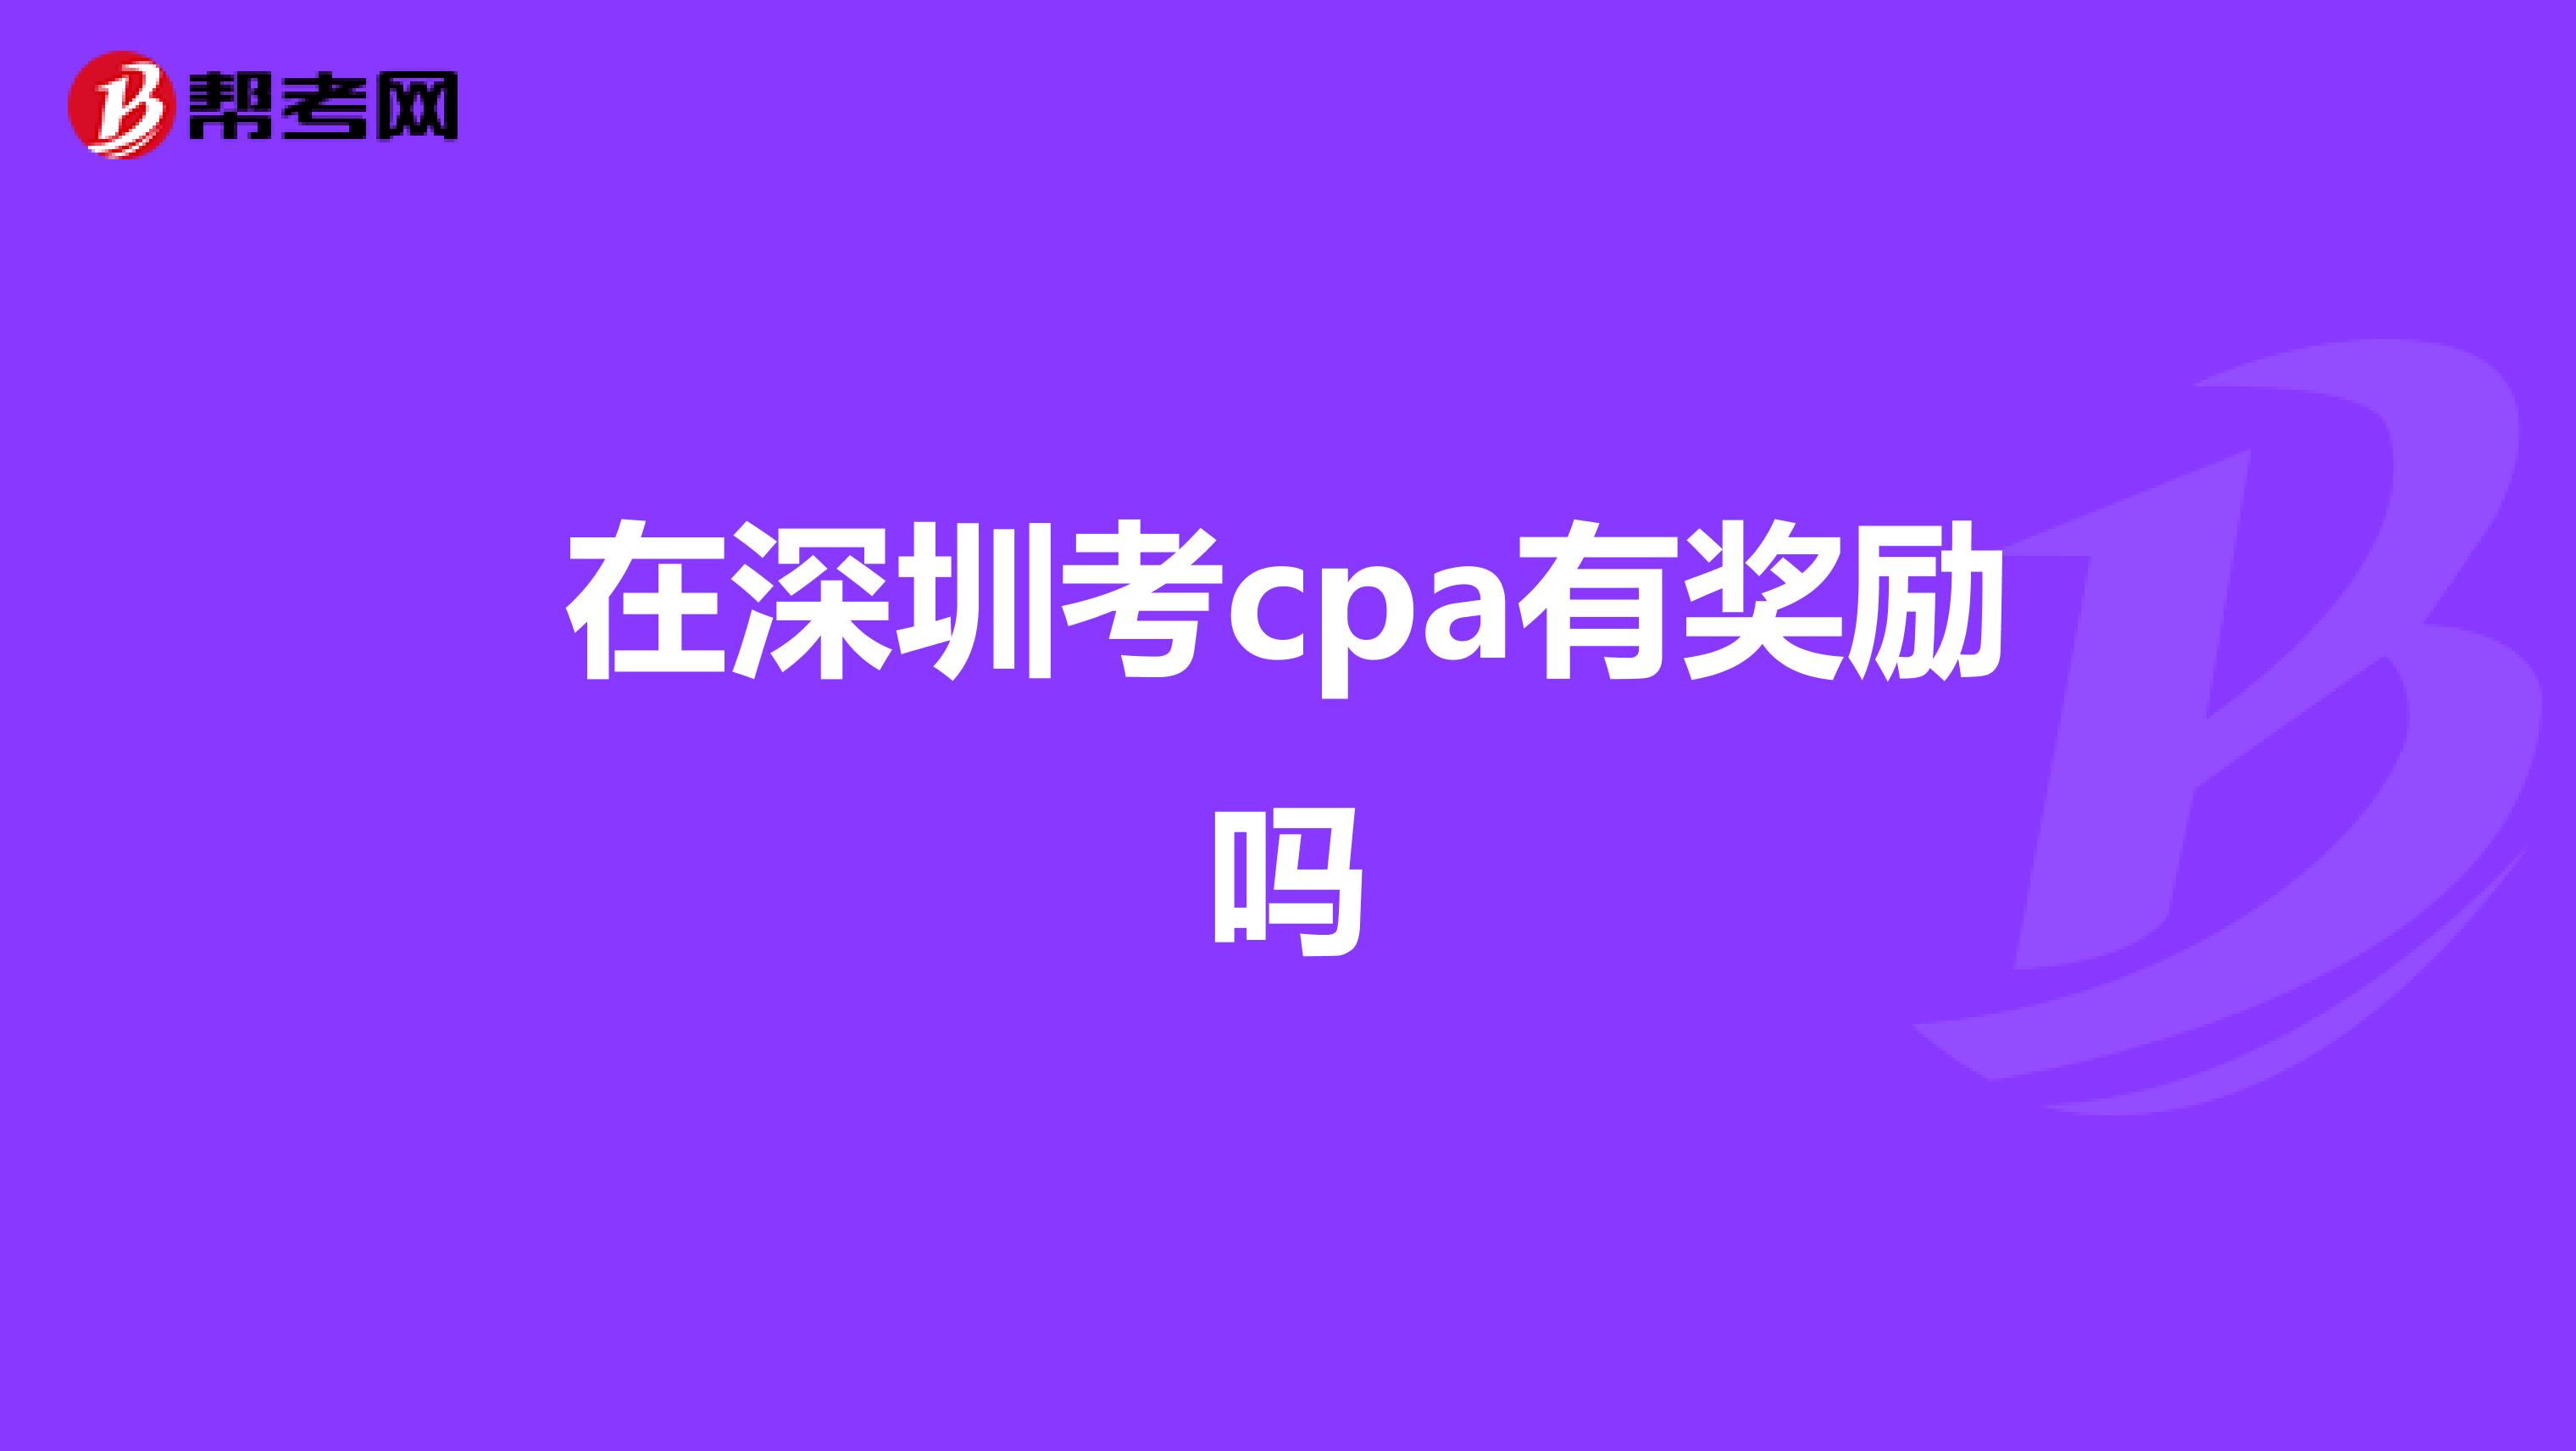 在深圳考cpa有奖励吗